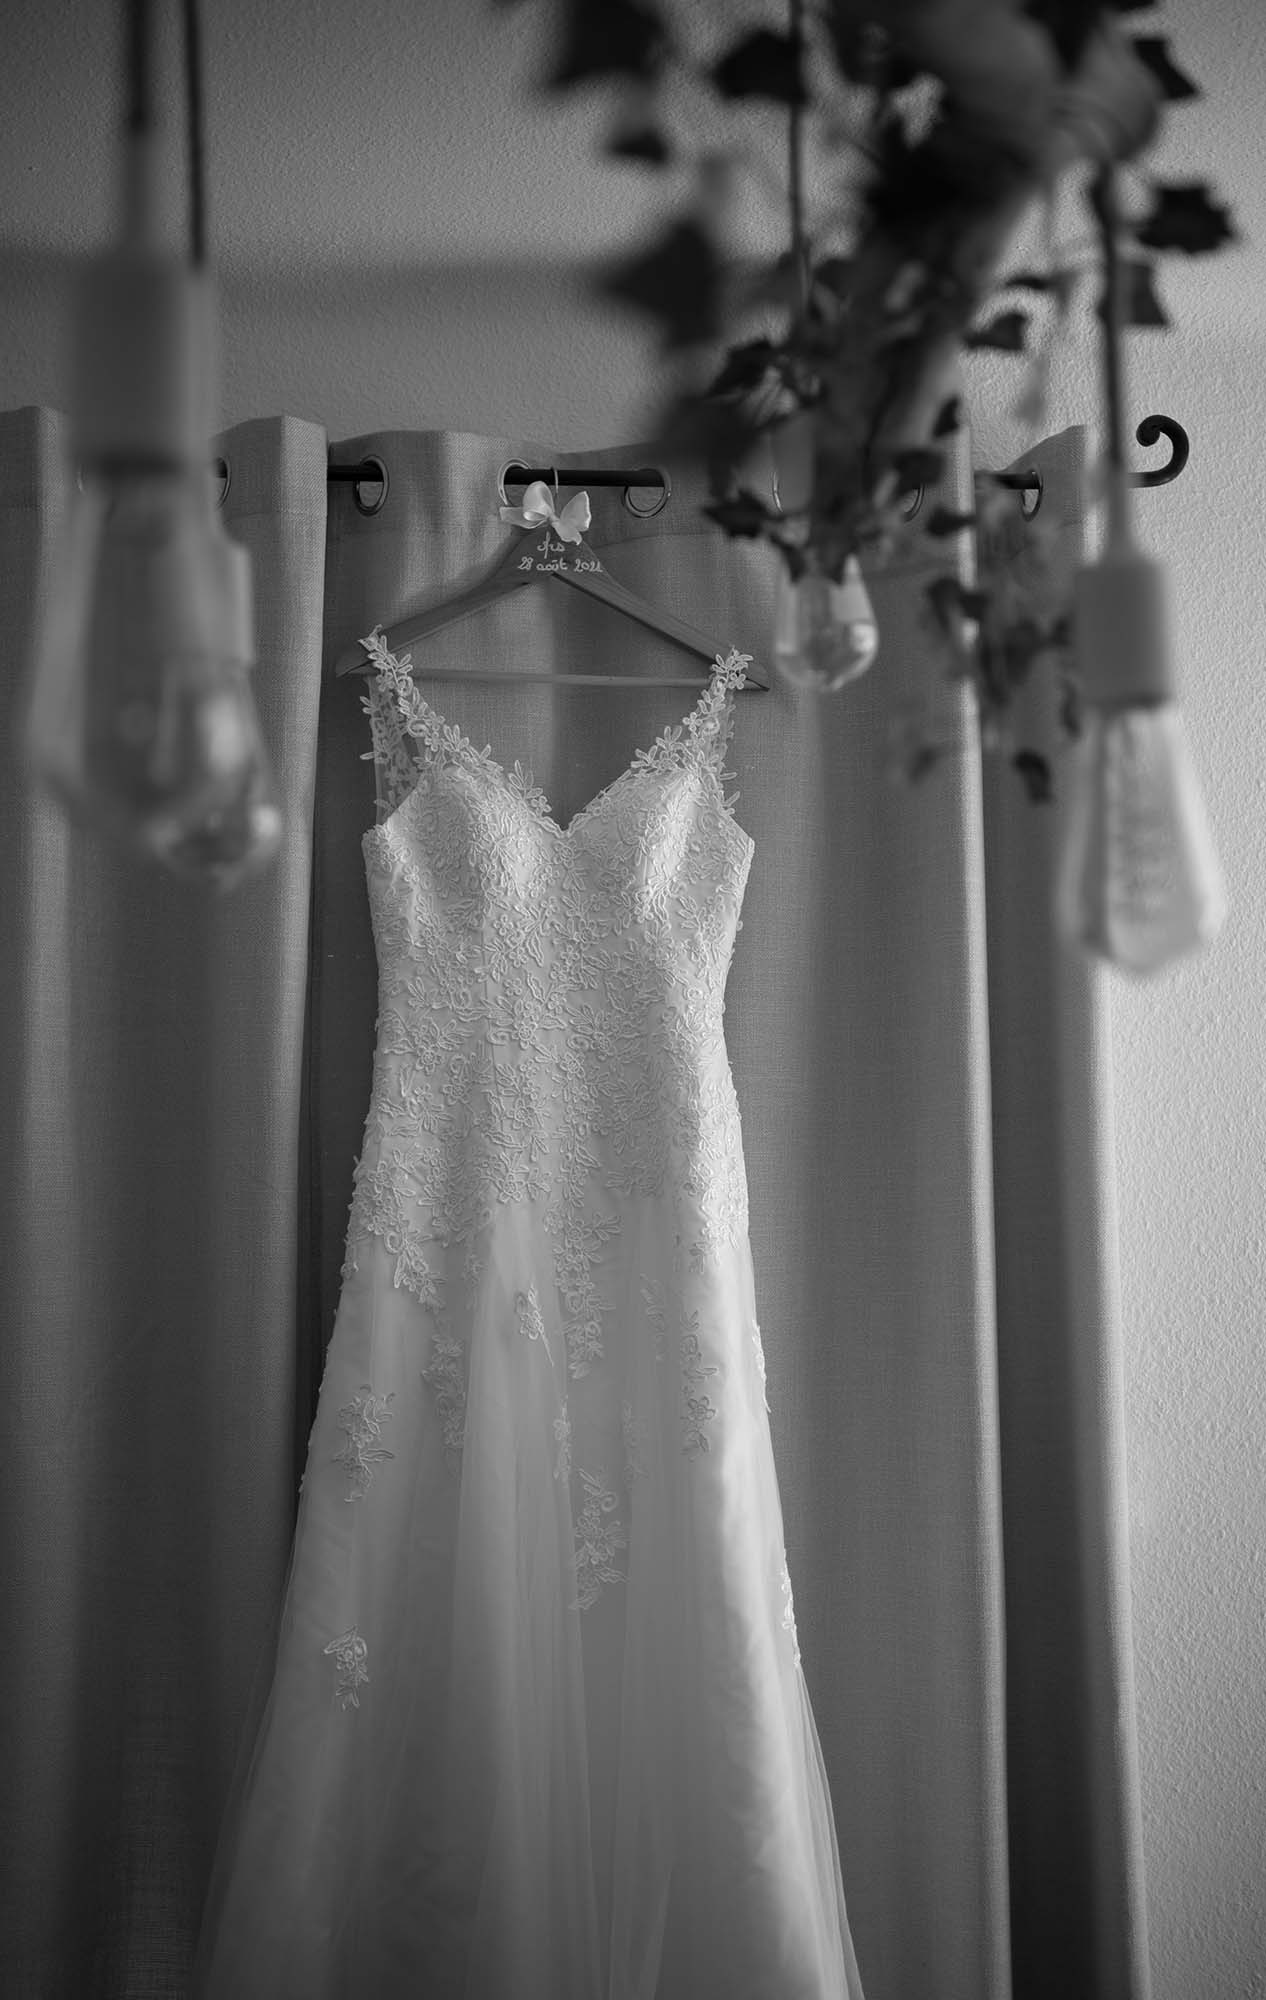 photo noir et blanc d'une robe de marié accrochée sur une tringle à rideaux